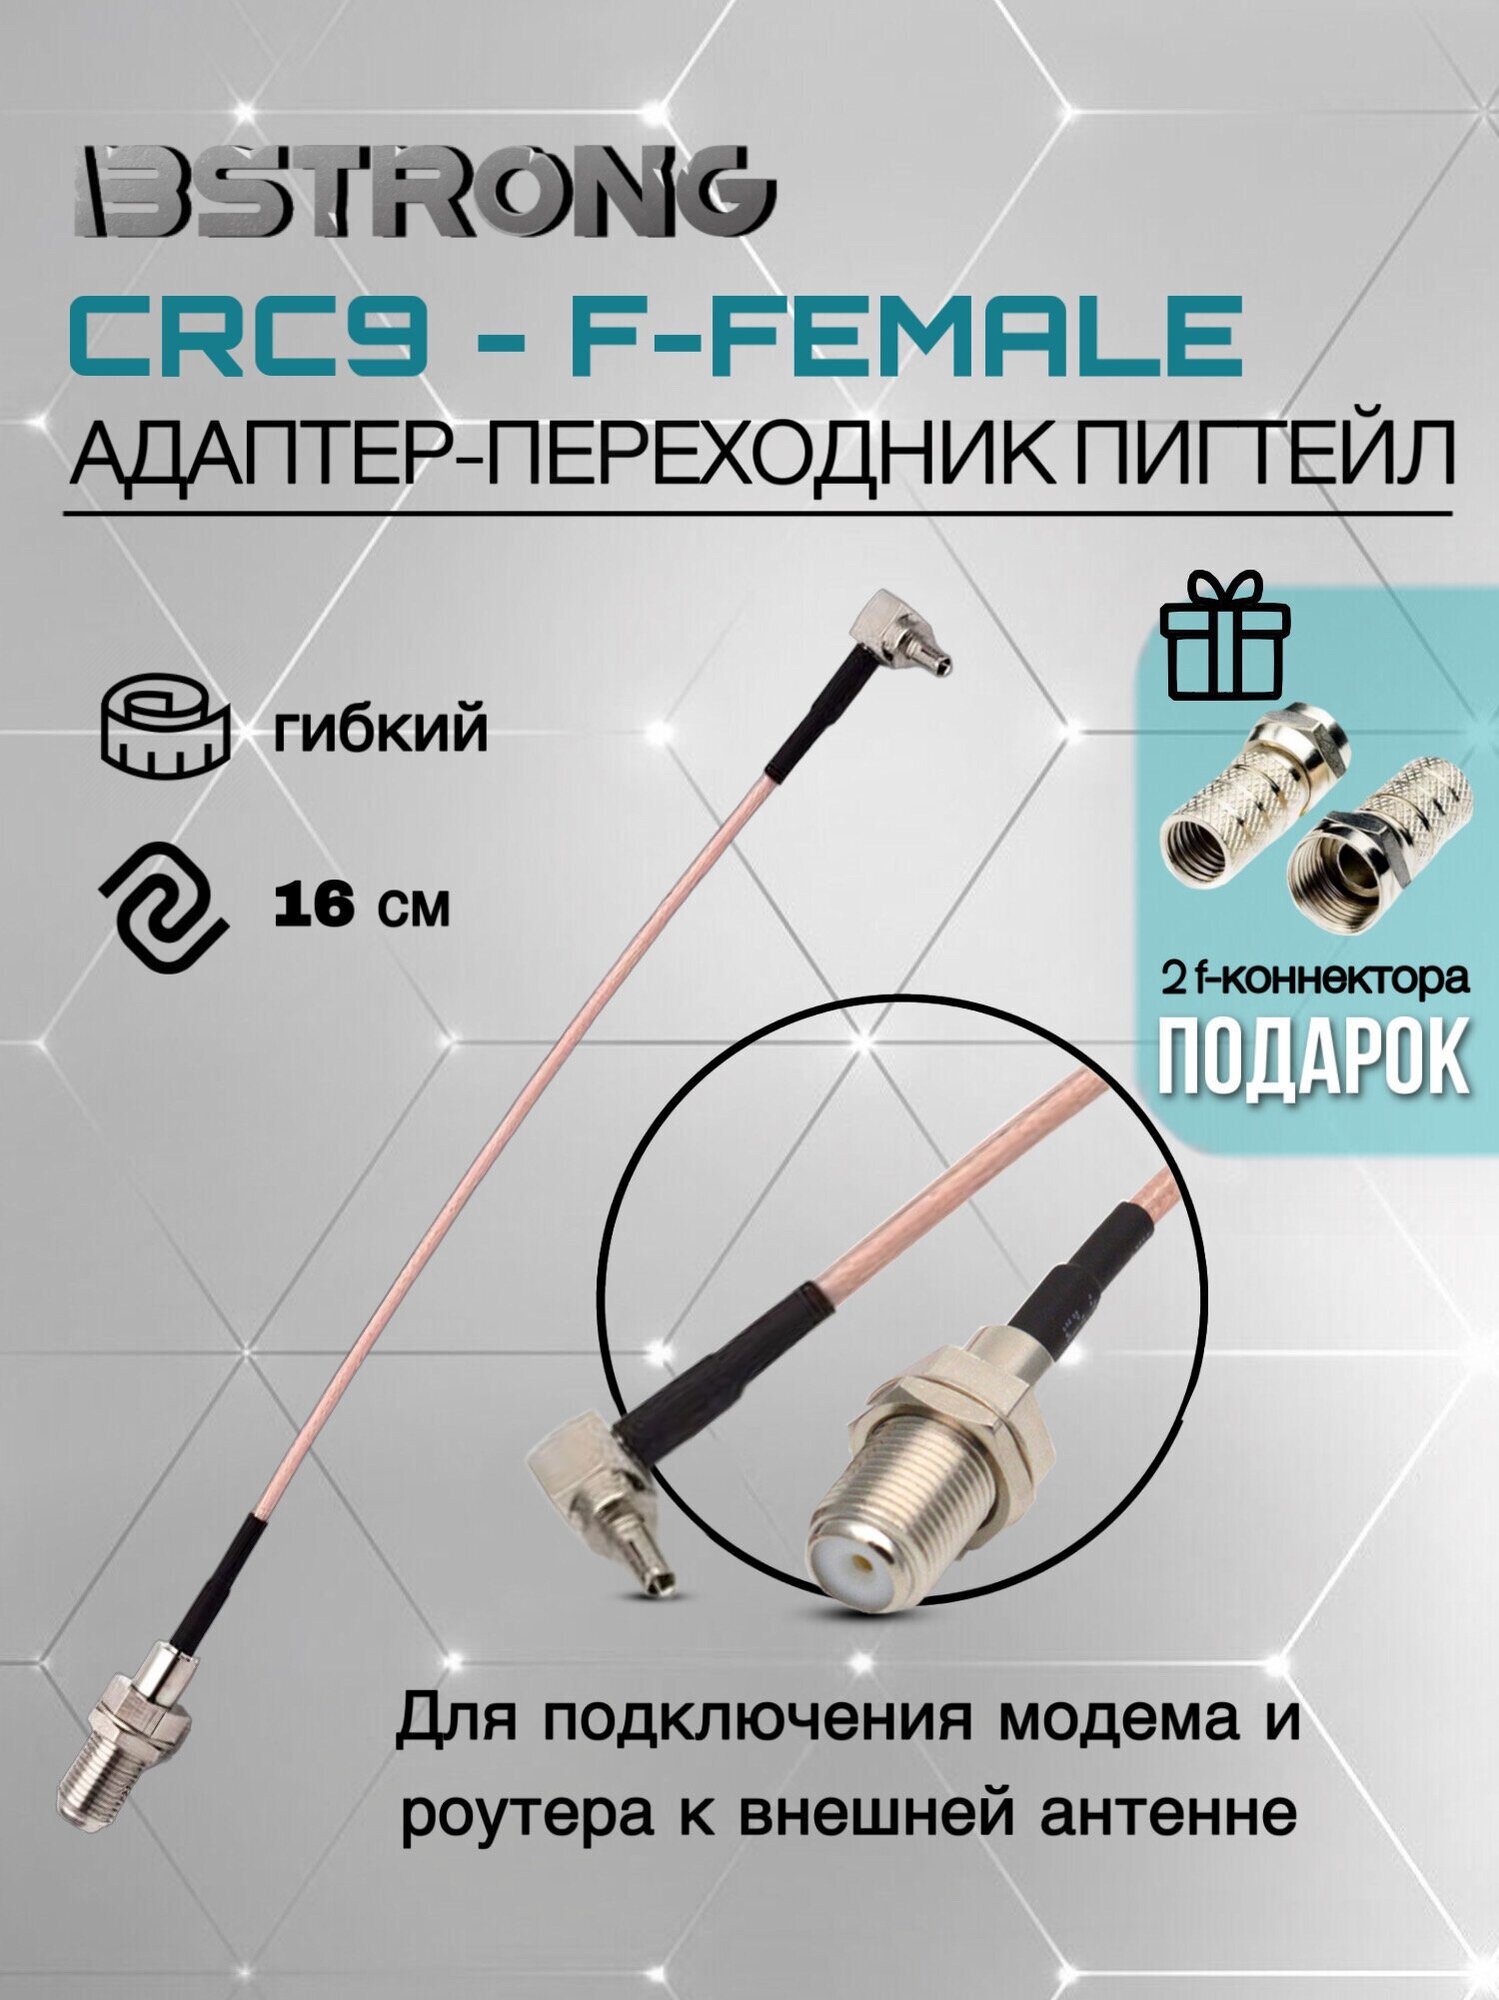 Адаптер-переходник Пигтейл CRC9-F-female 15 см + 2 f-разъема для подключения модема роутера к внешней антенне